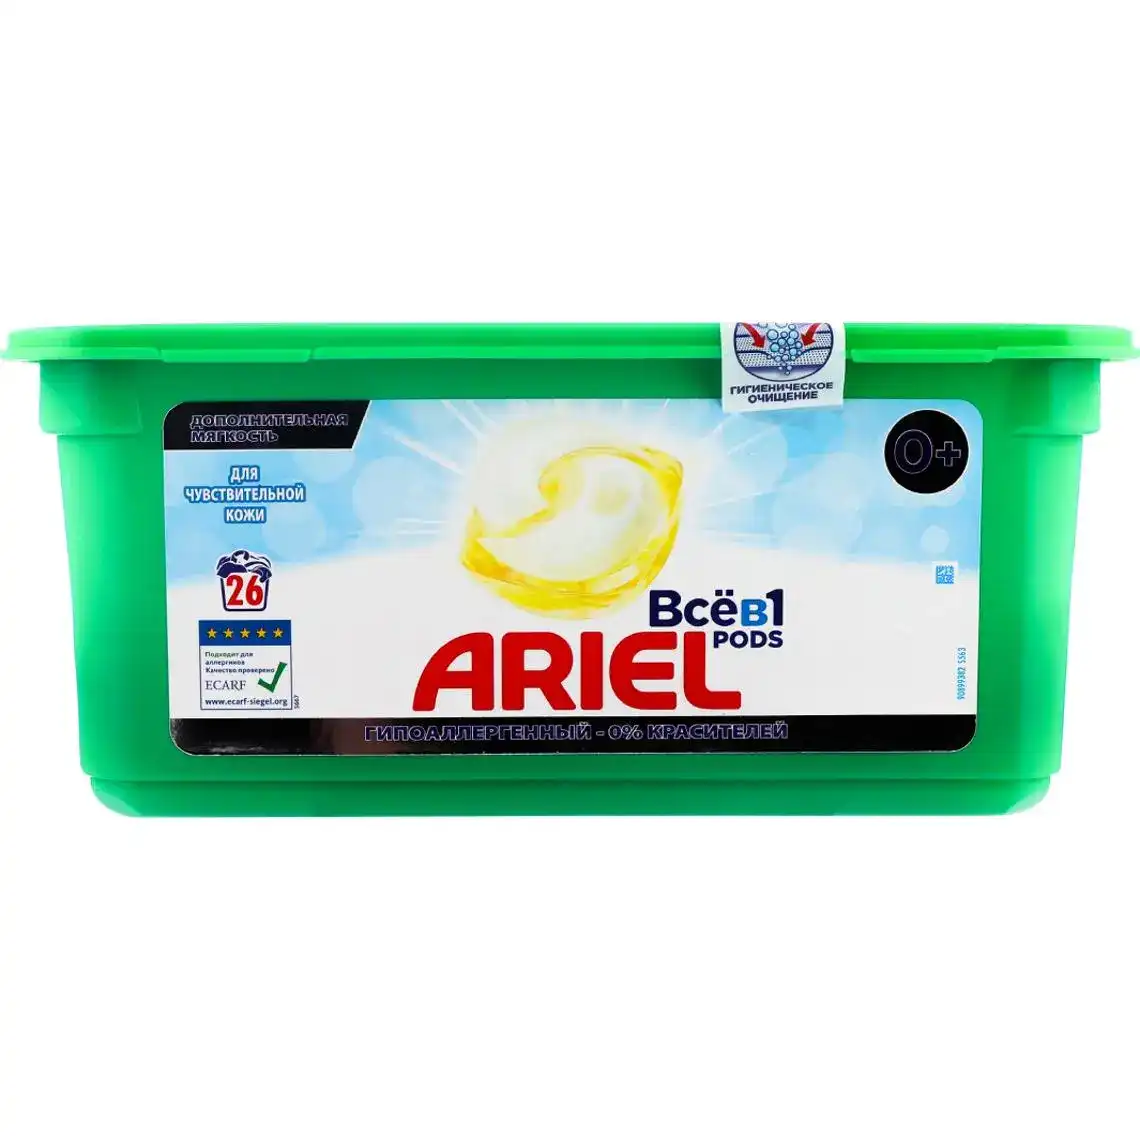 Капсули для прання Ariel Всев1 Pods для чутливої шкіри 26 шт.